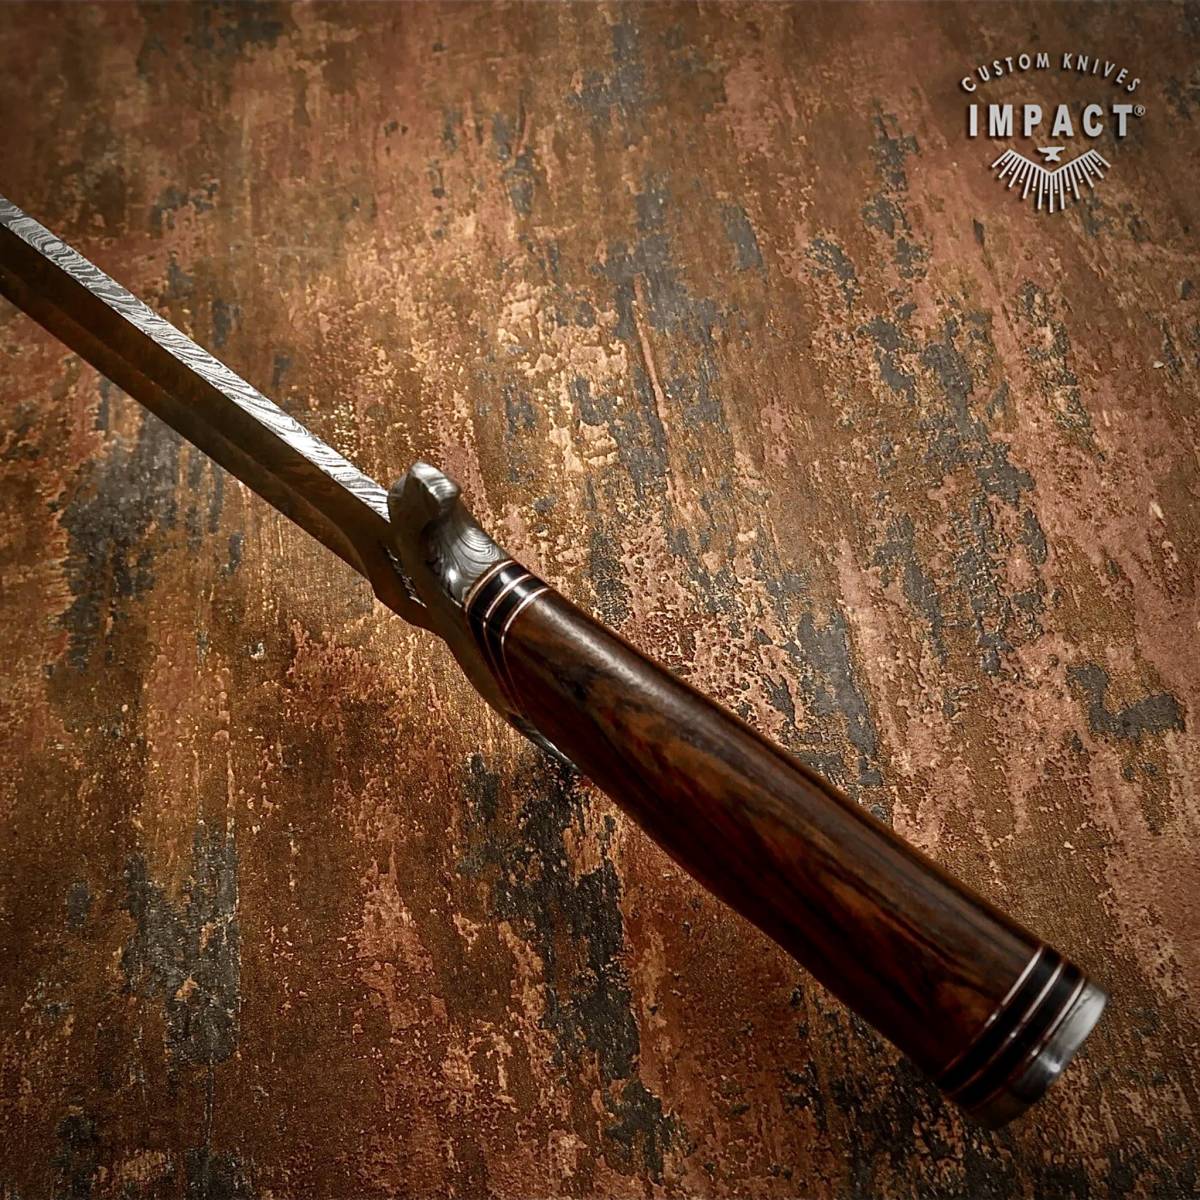 * общая длина 45.2cm Англия IMPACT производства Damas rental сталь нож custom монтировка деревянный руль уличный предотвращение бедствий Survival охота кемпинг ..